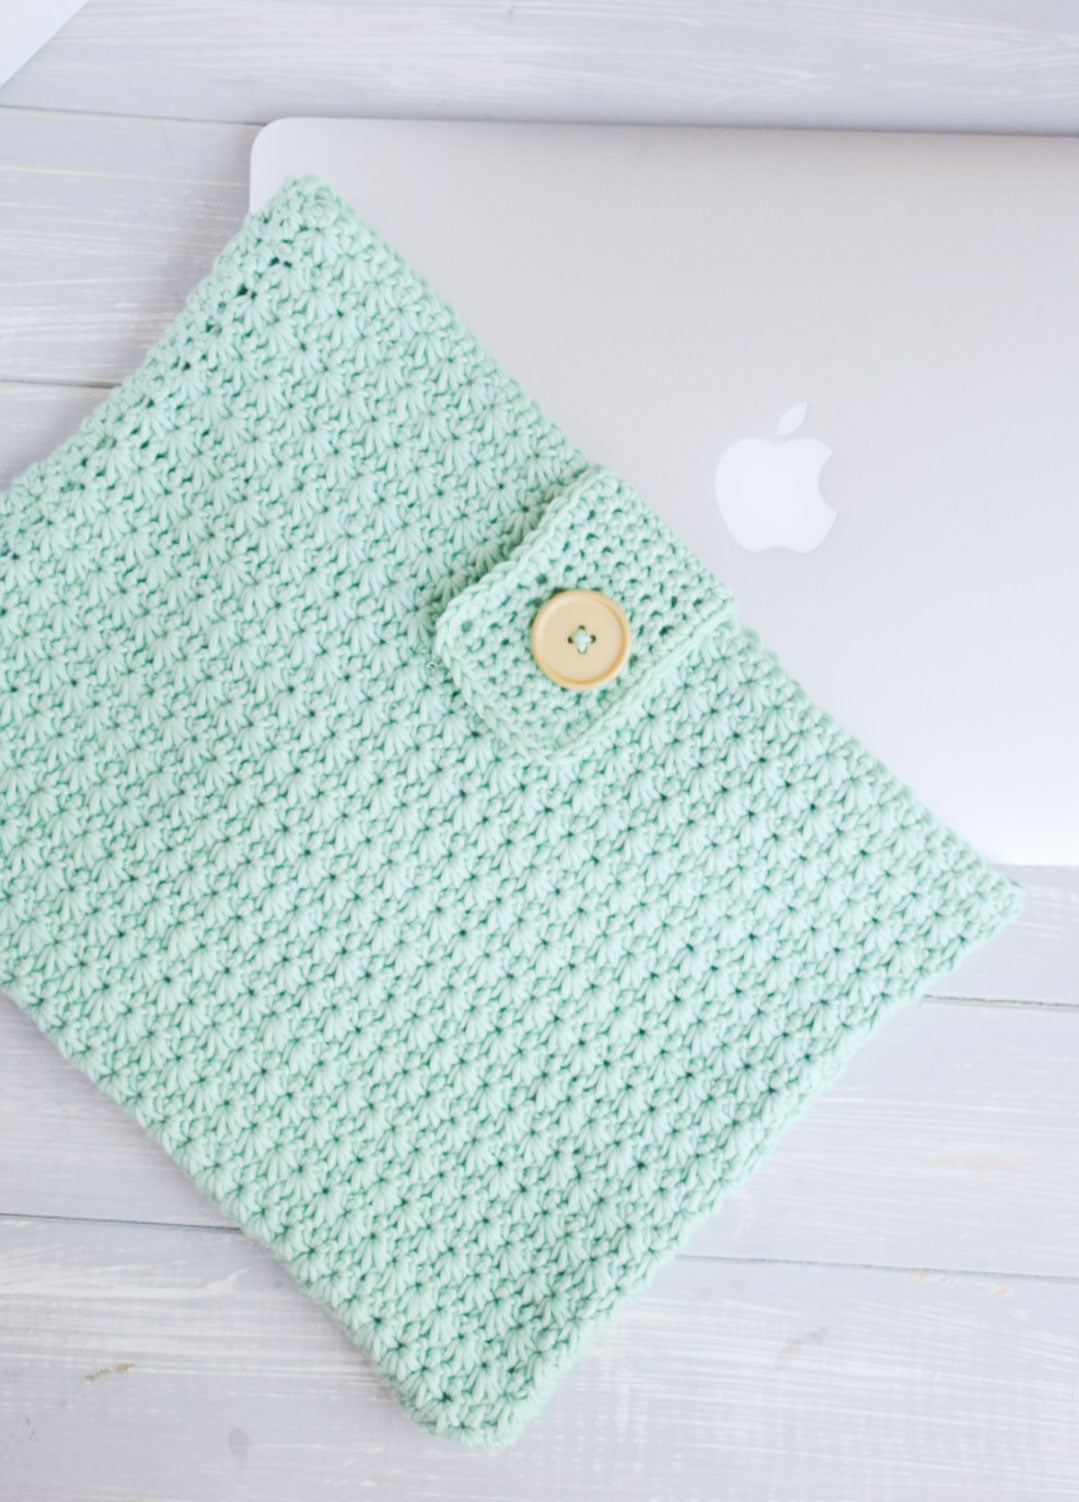 Laptop Sleeve Free Pattern by @principe_del_crochet